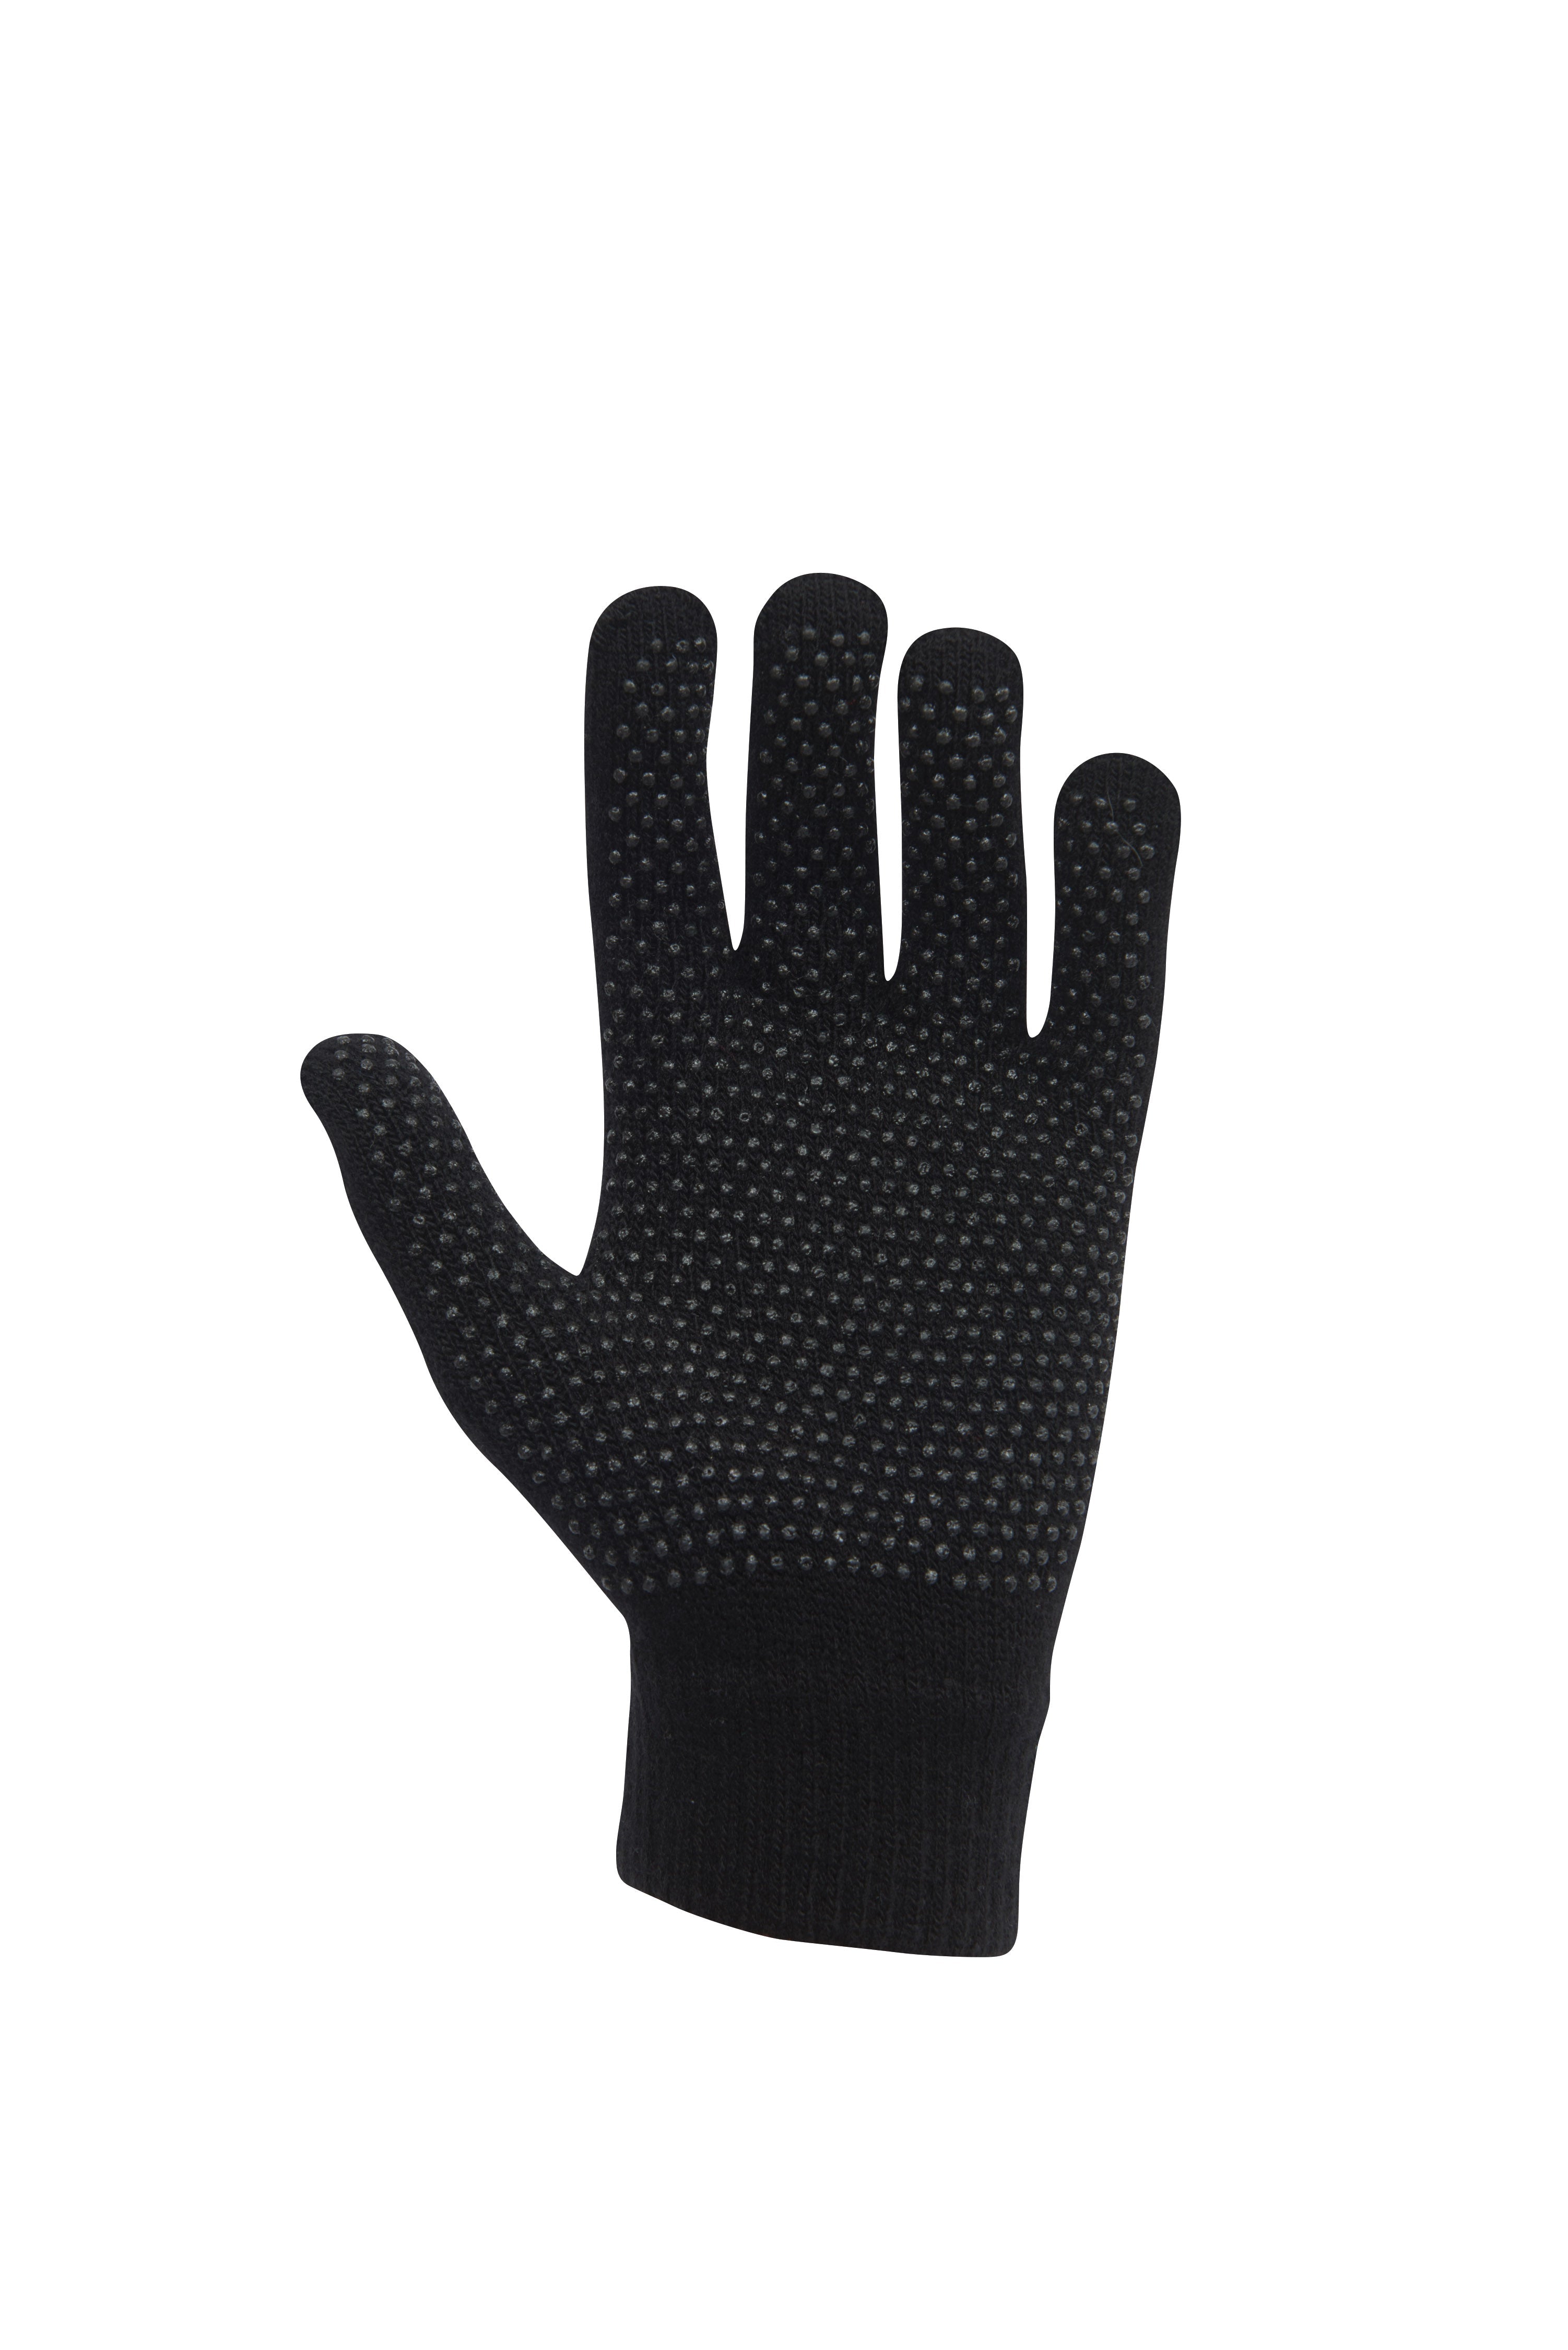 Dublin Kids Pimple Gloves - Black